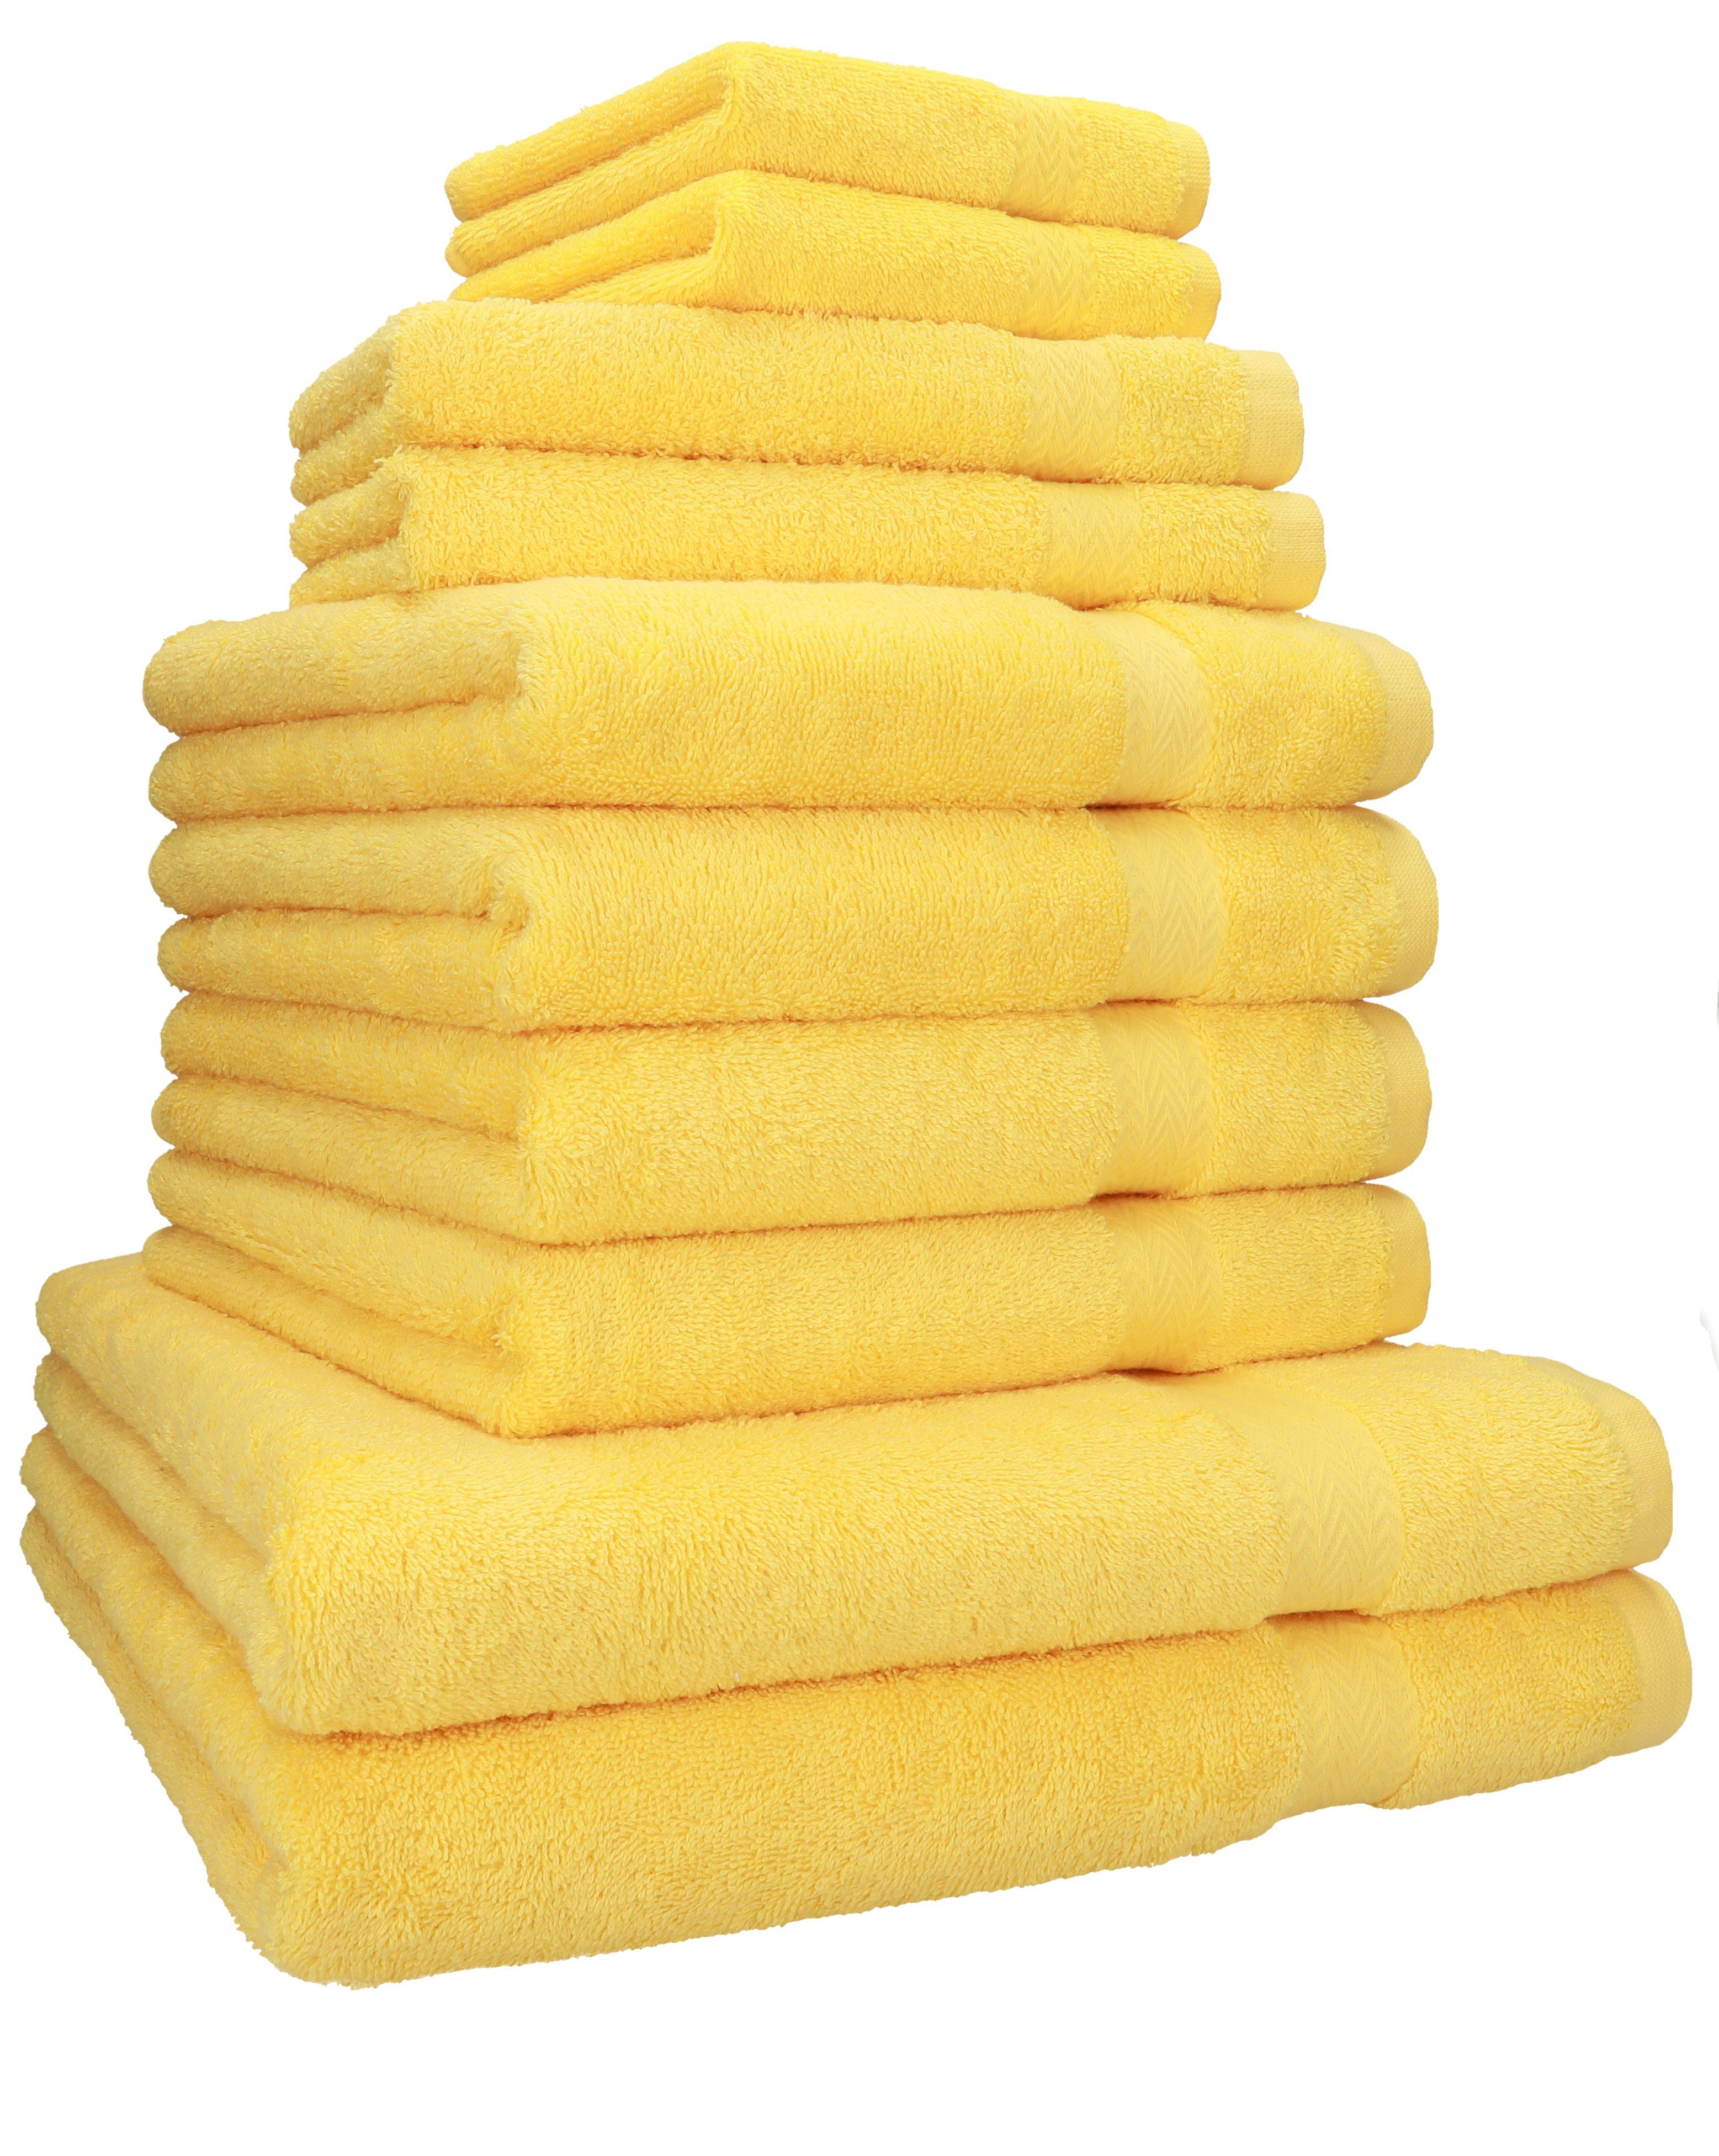 Handtuch Seiftücher, Set Handtücher gelb 2 2 Betz Handtuch-Set 4 2 (10-tlg) 100% Gästetücher Duschtücher Baumwolle, 10-TLG. Baumwolle 100% Classic